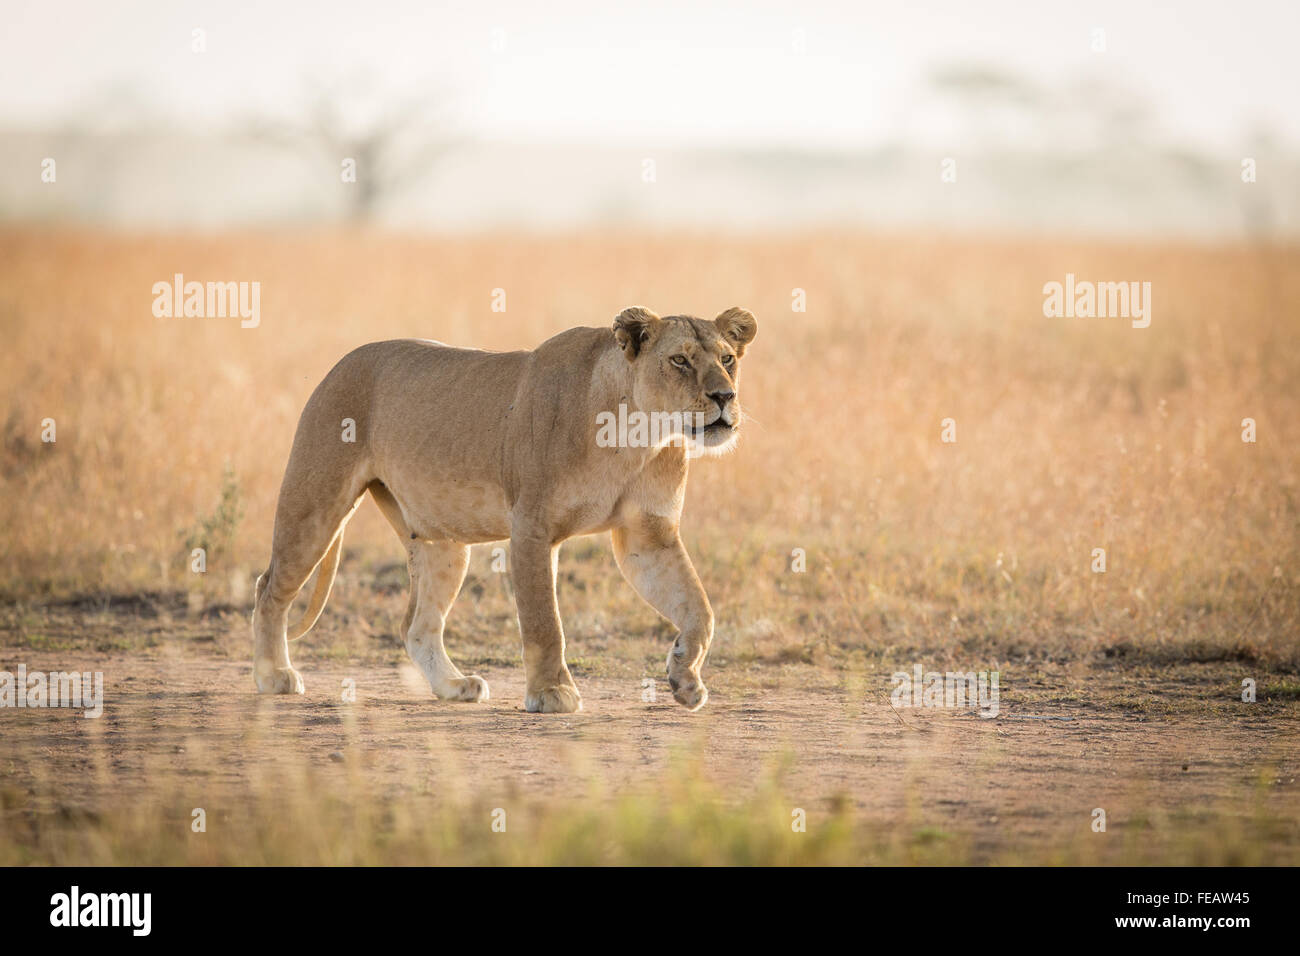 La proie de la traque des Lioness africaines dans le parc national du Serengeti Tanzanie Banque D'Images